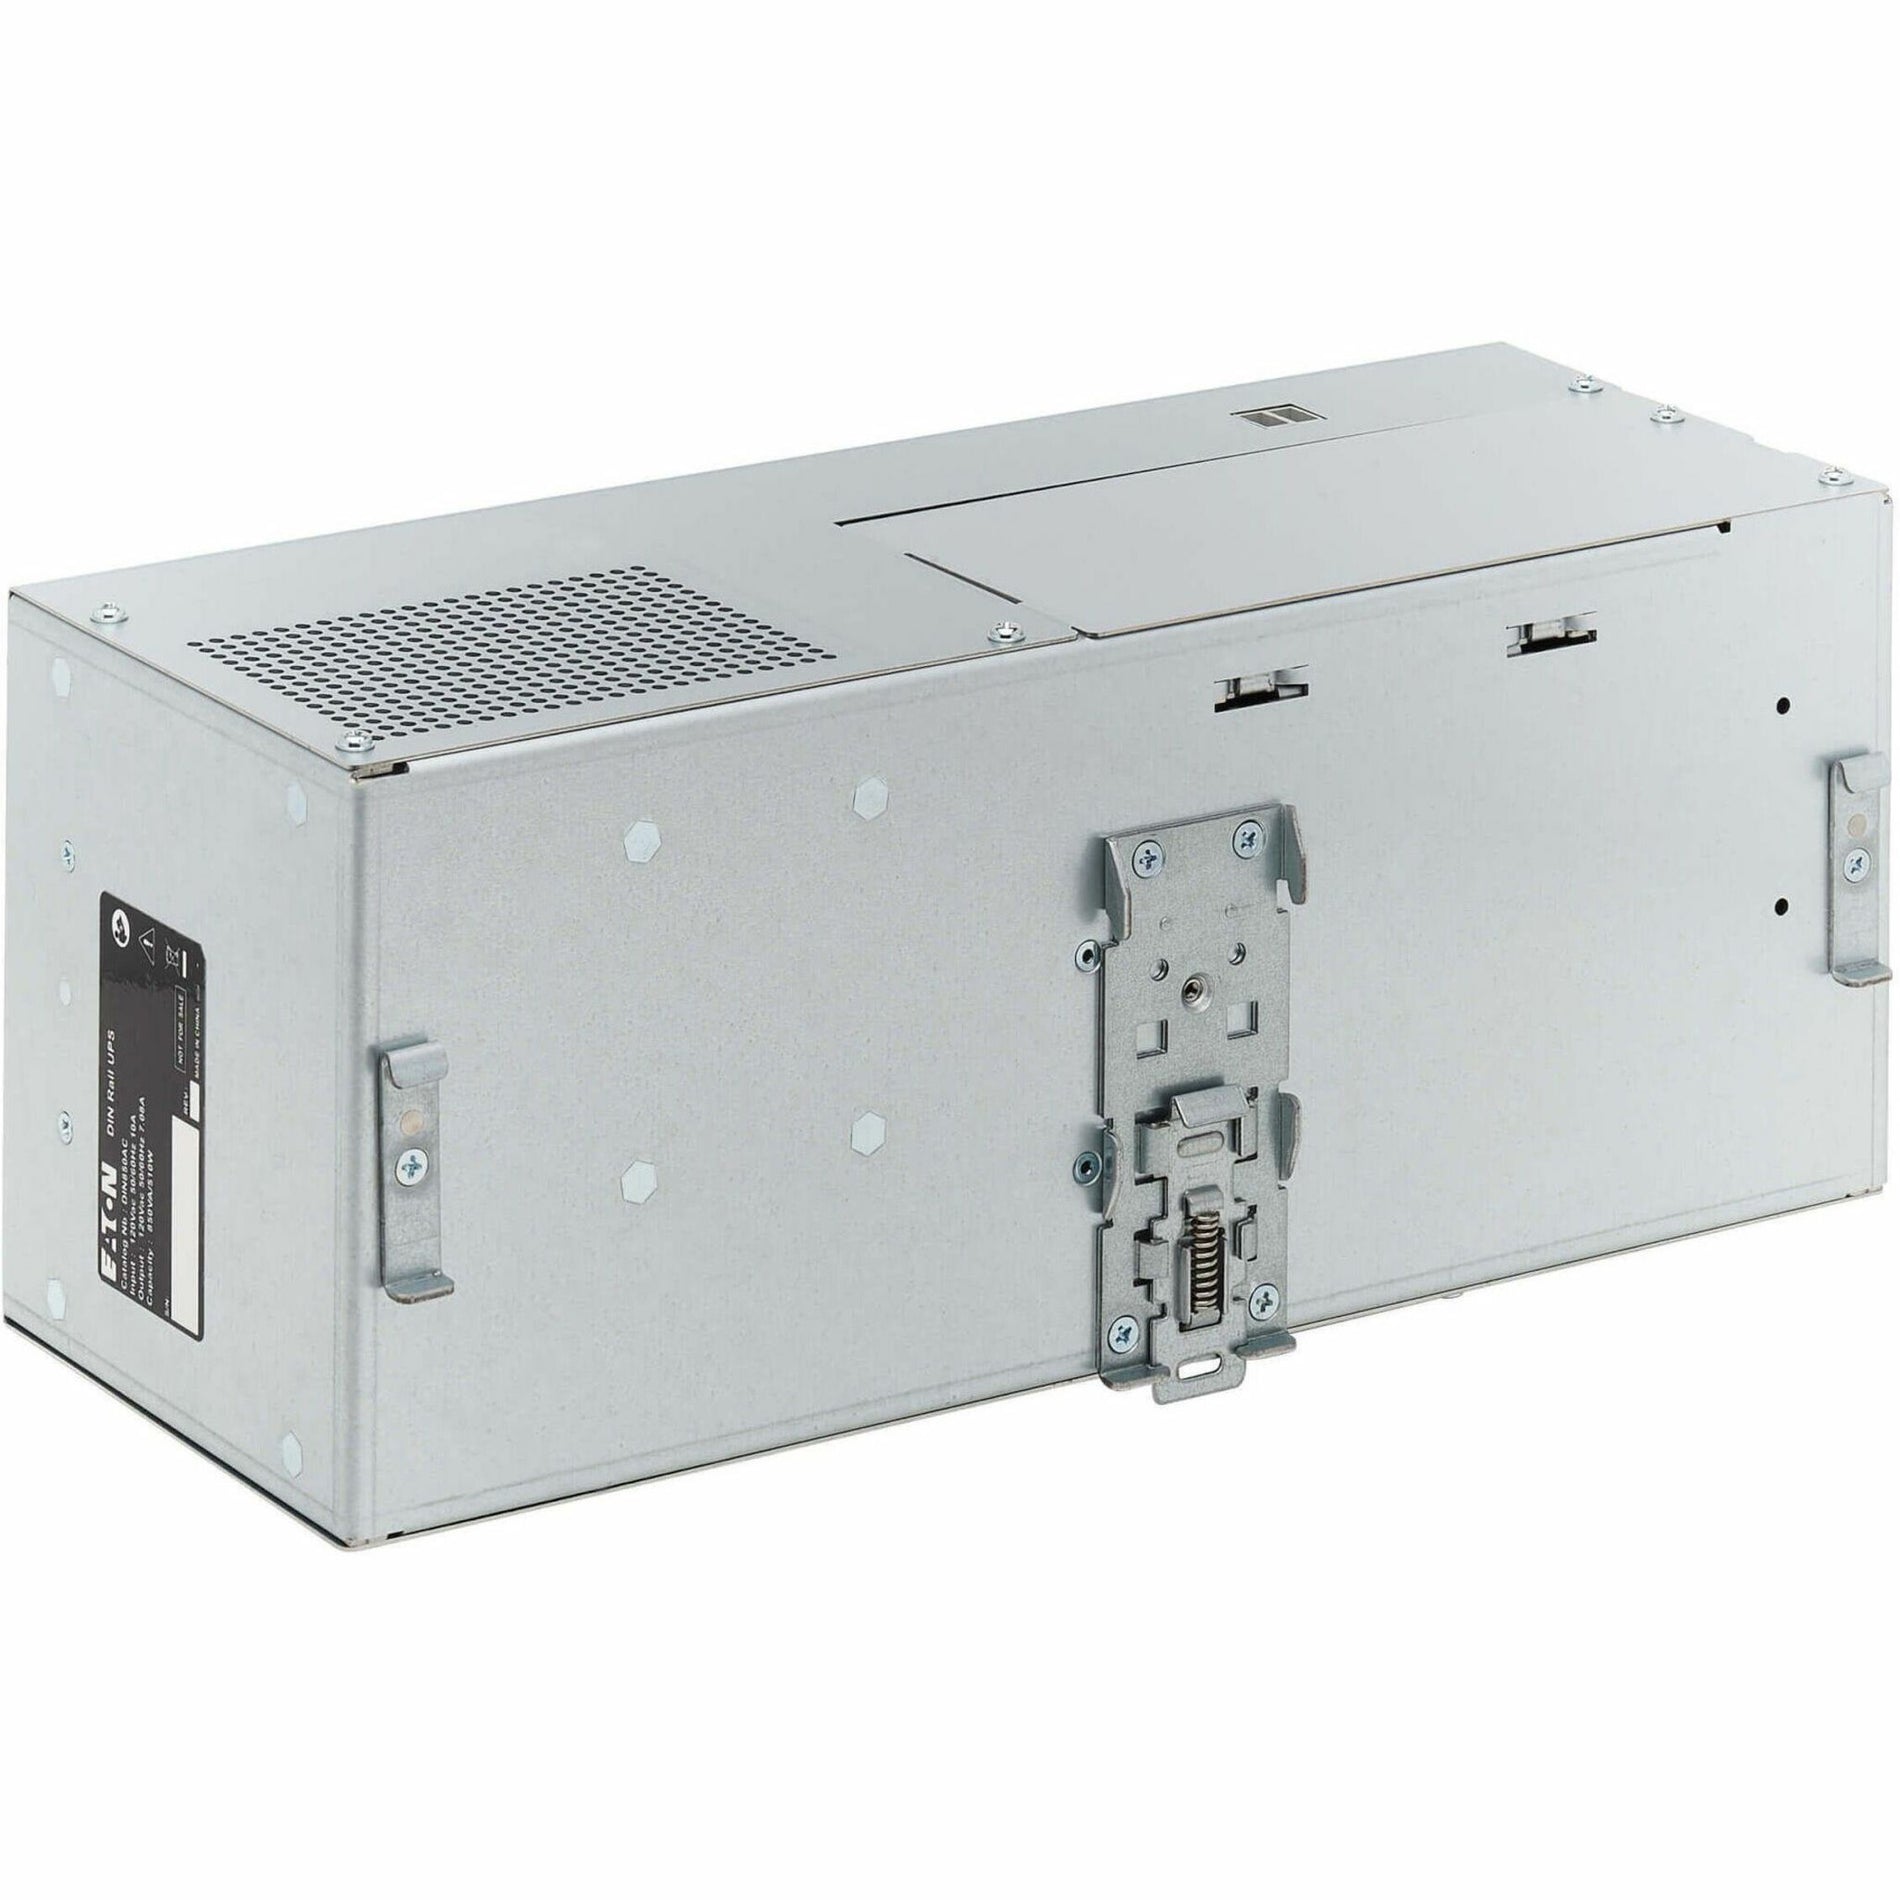 Eaton DIN850AC UPS para uso general UPS de riel DIN de 850VA Garantía de 2 años.